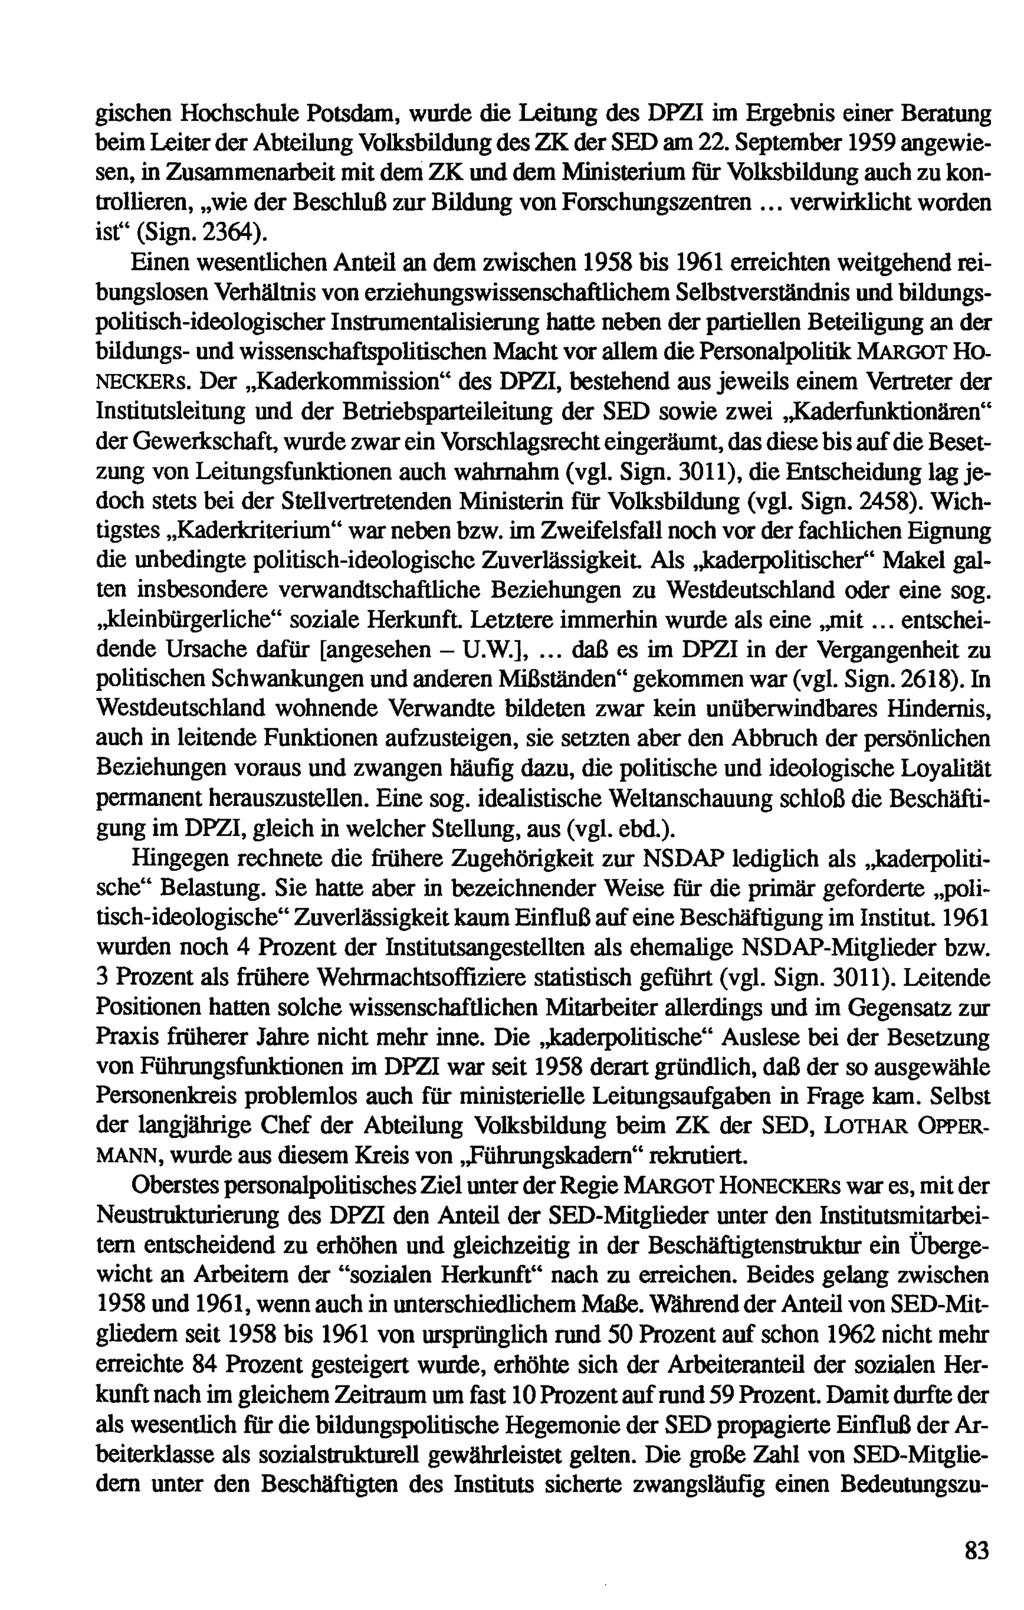 U.W.], verwhkhcht gischen Hochschule Potsdam, wurde die Leitung des DPZI im Ergebnis einer Beratung beim Leiter der Abteilung Volksbüdung des ZK der SED am 22.